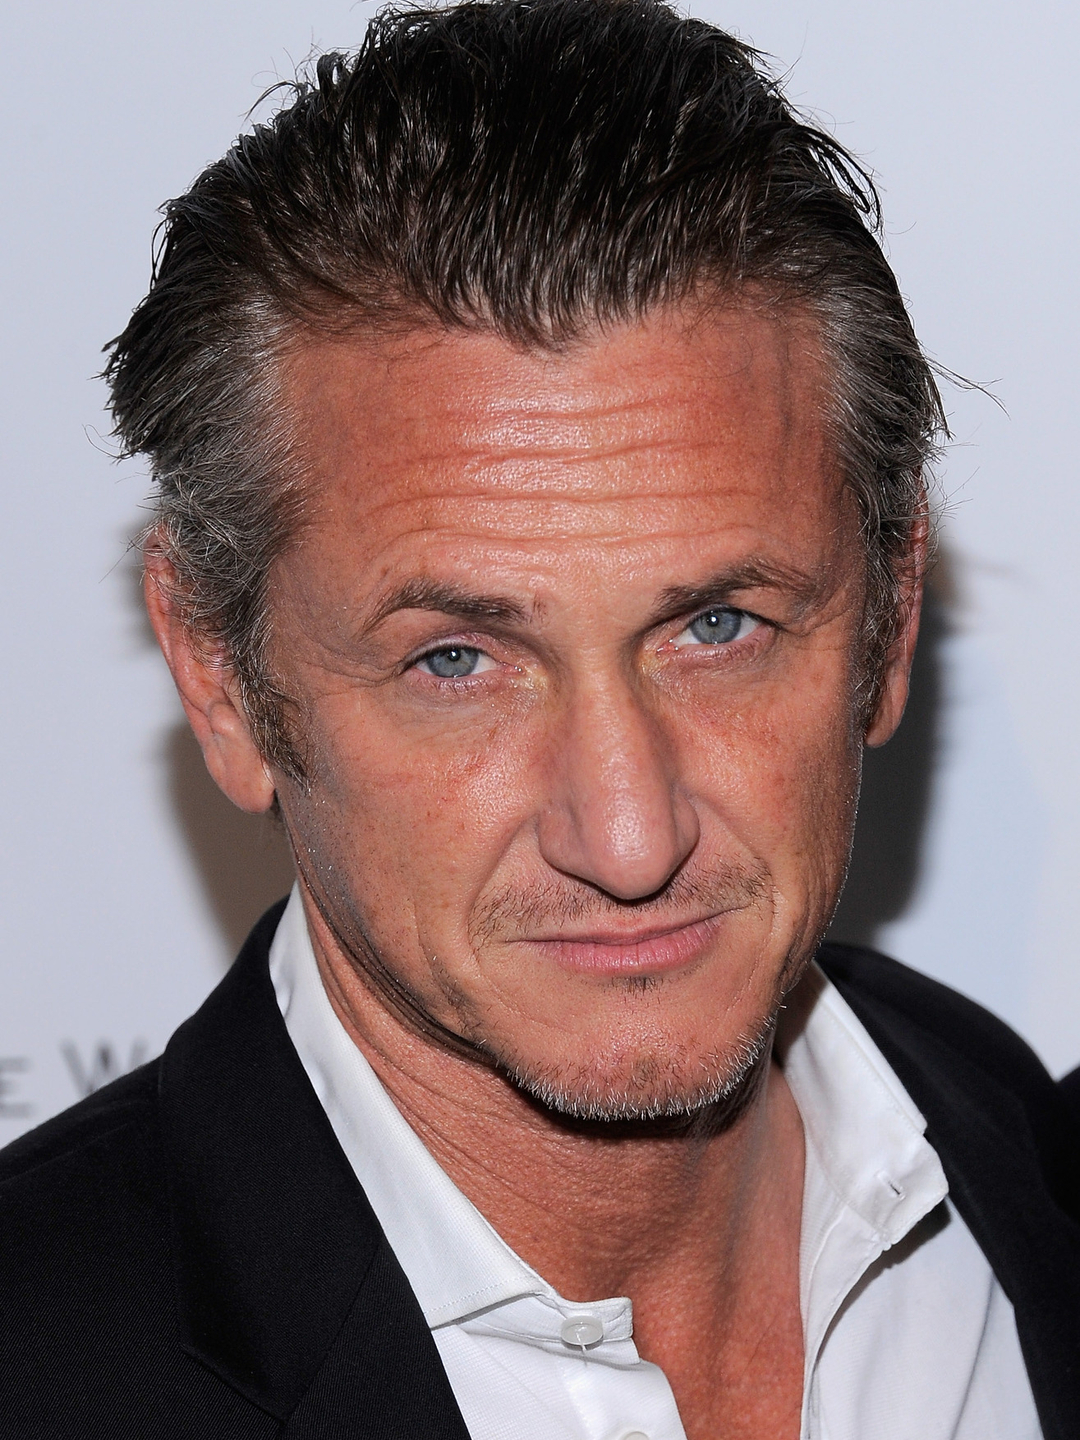 Sean Penn biography